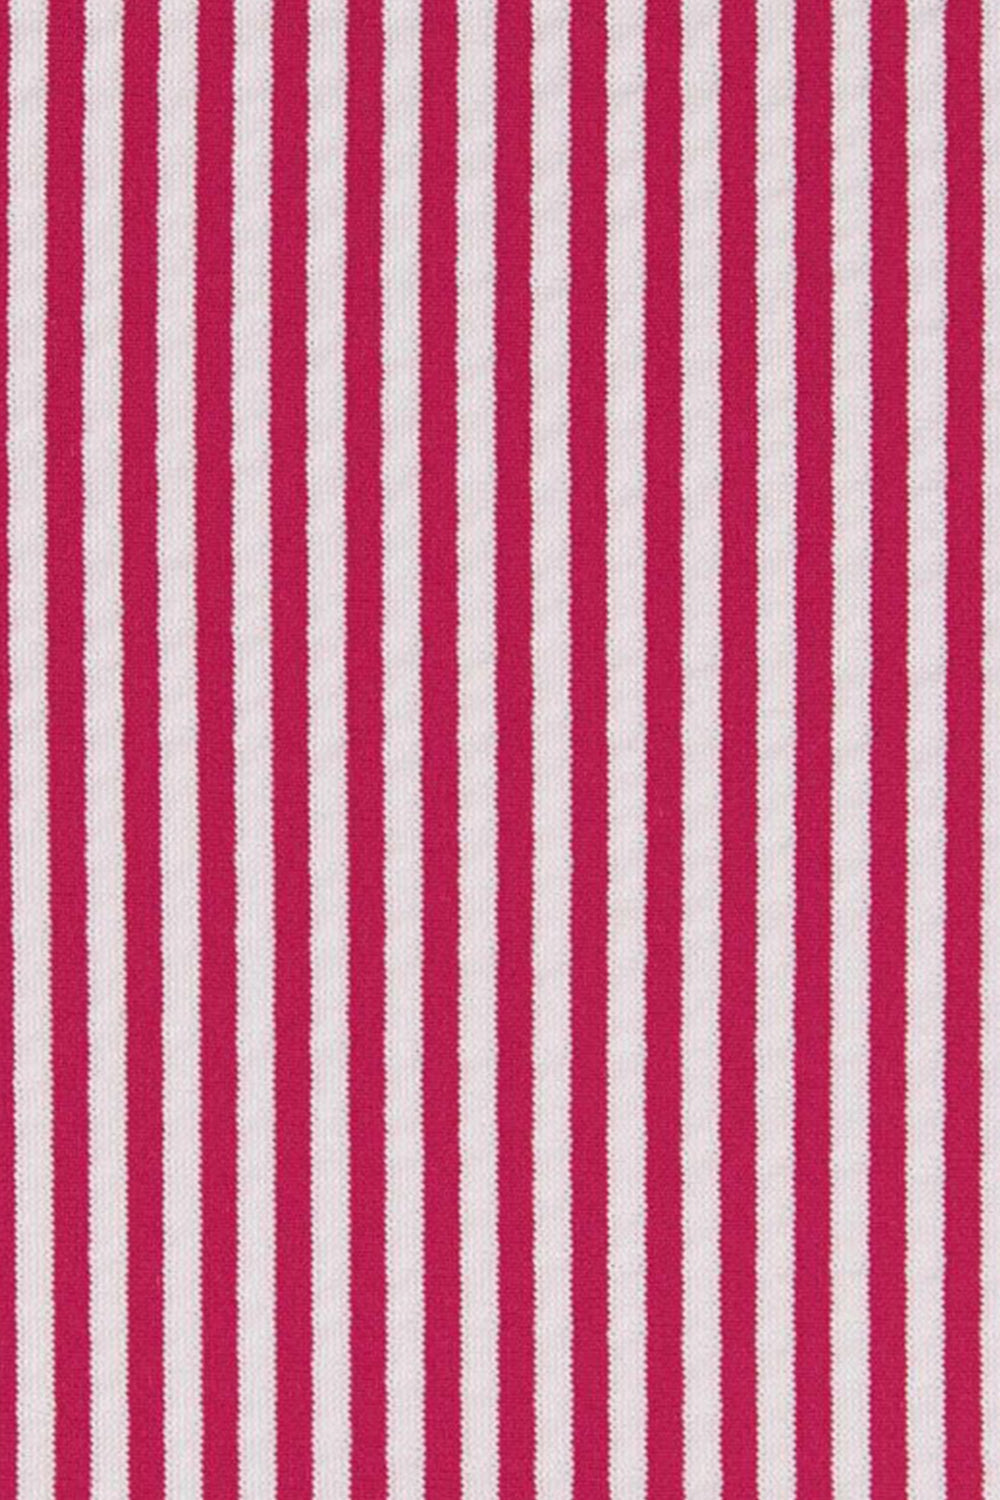 pattern a rayas verticales blanco y rojo